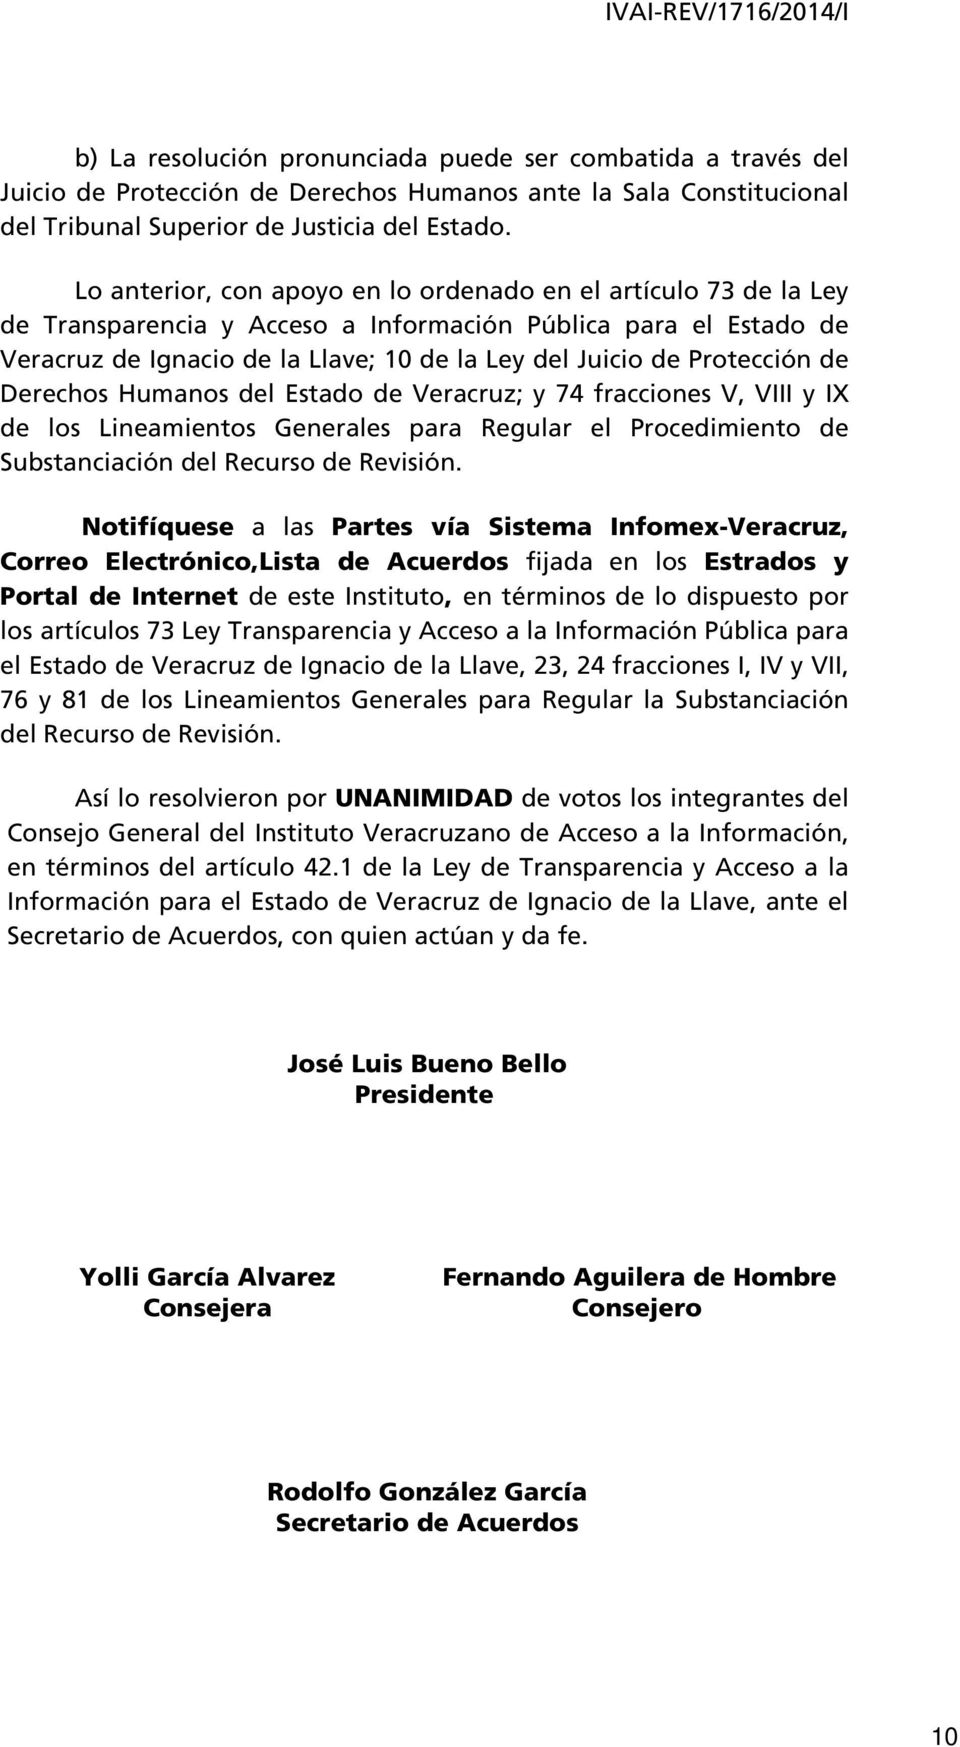 Protección de Derechos Humanos del Estado de Veracruz; y 74 fracciones V, VIII y IX de los Lineamientos Generales para Regular el Procedimiento de Substanciación del Recurso de Revisión.